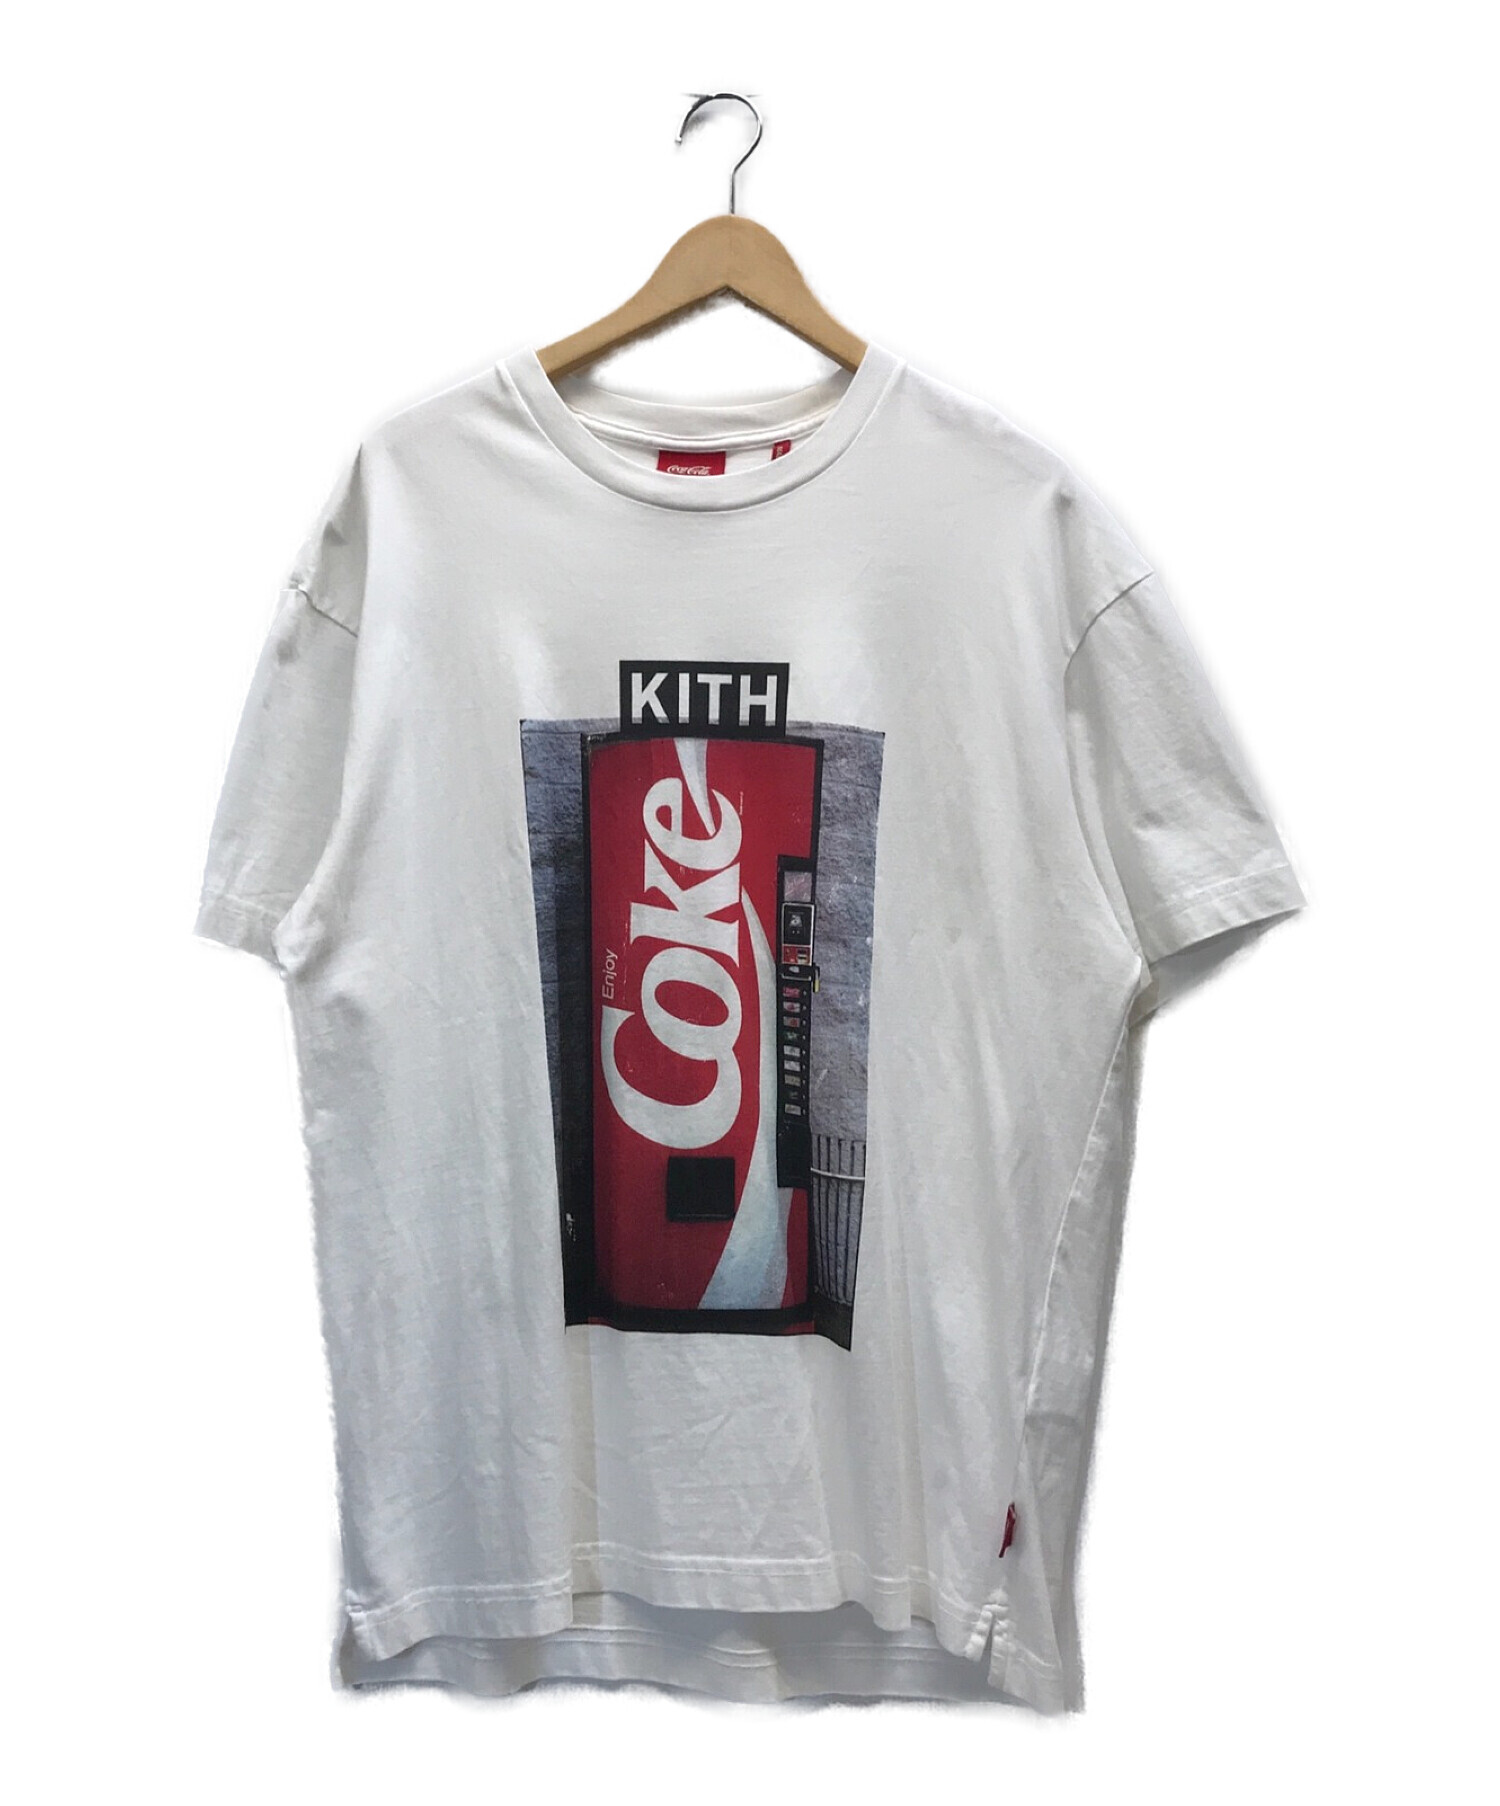 KITH×Coca-Cola コラボTシャツメンズ